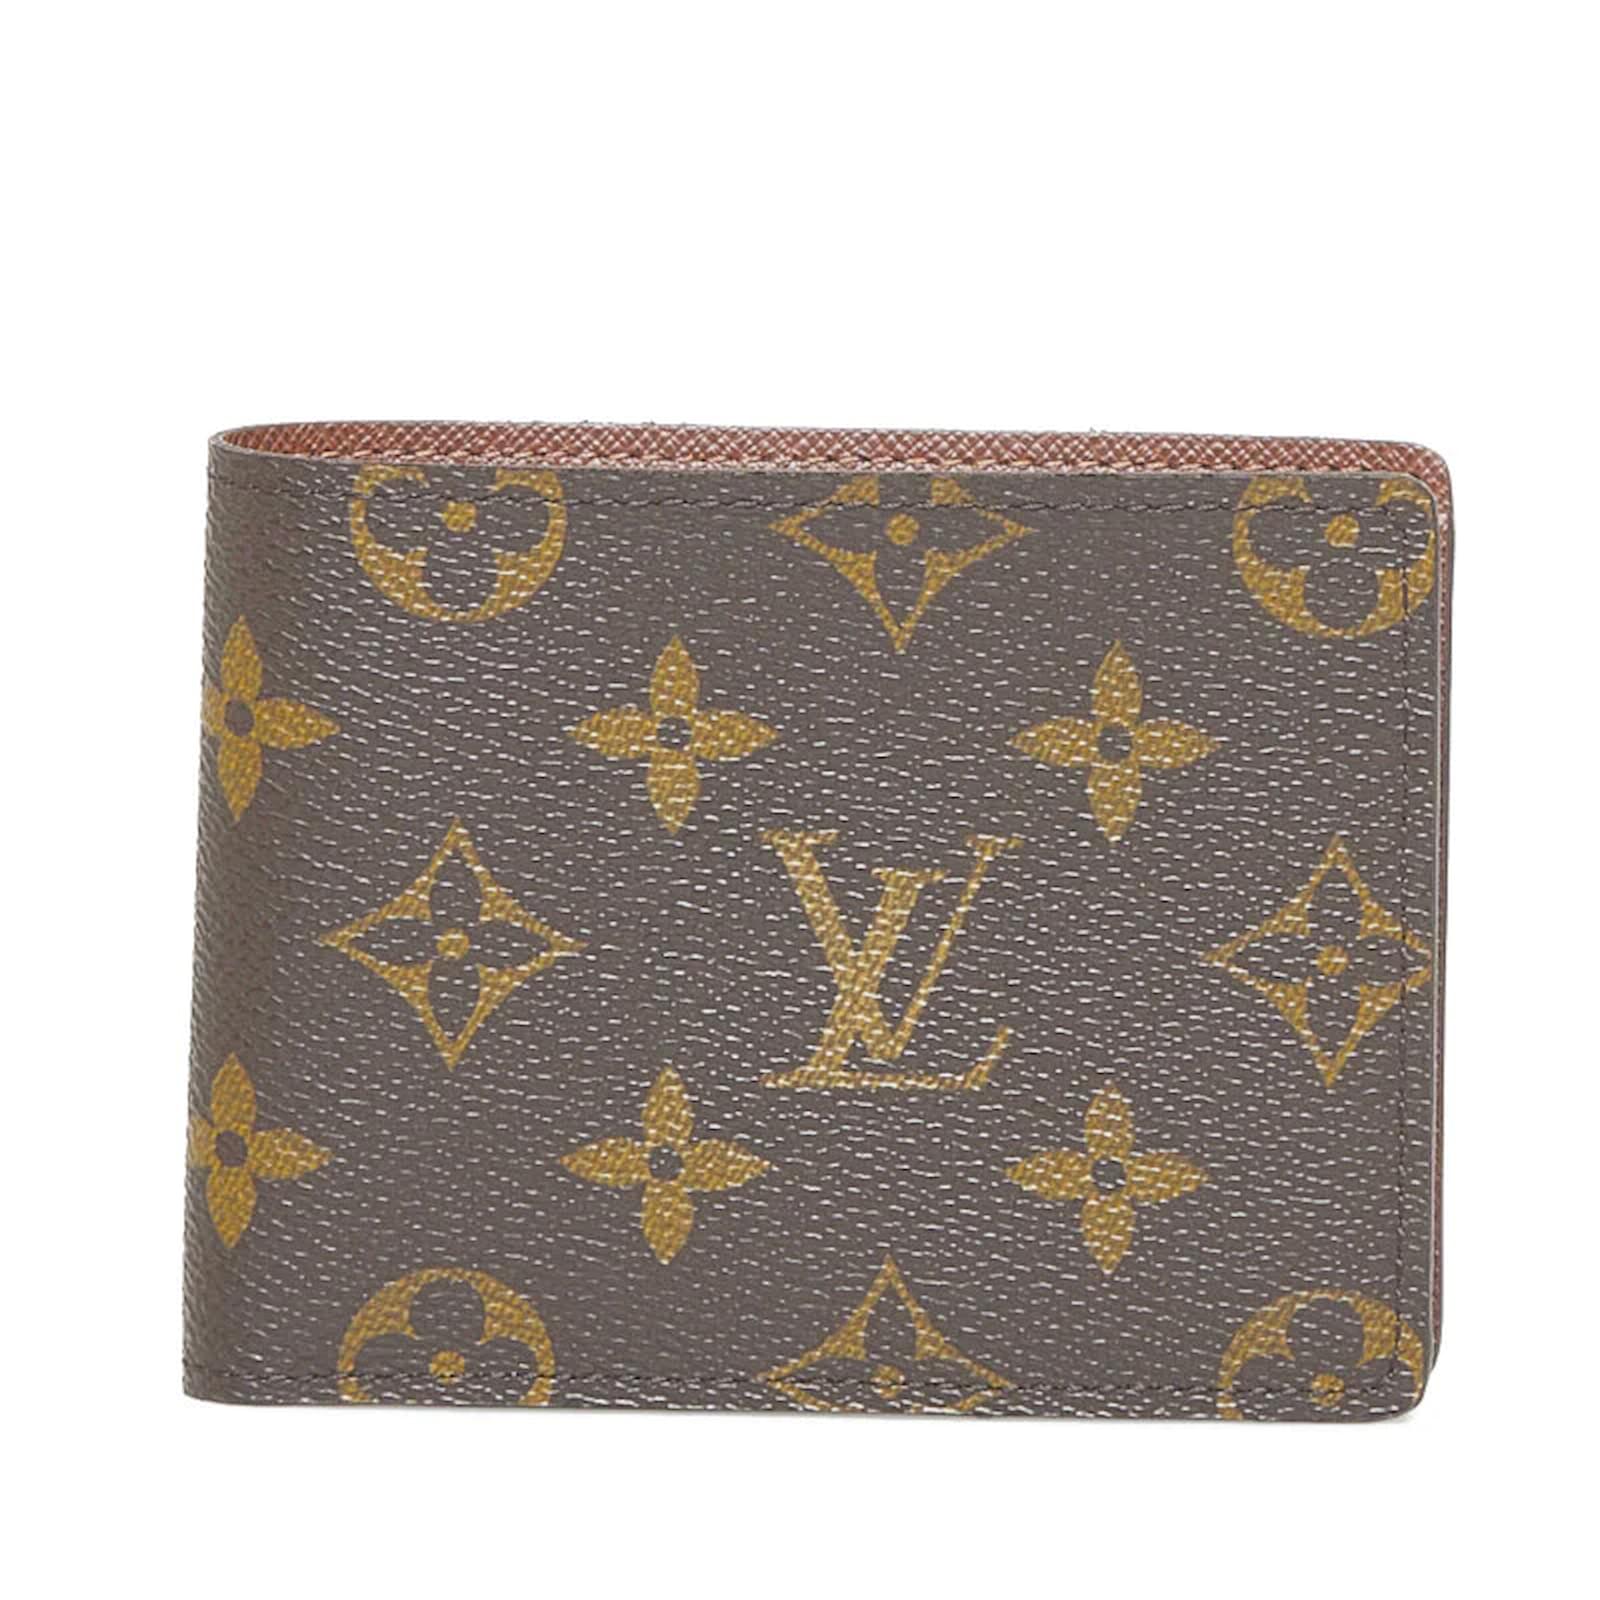 LOUIS VUITTON LV Multiple Wallet Short Wallet M60895 Monogram Brown